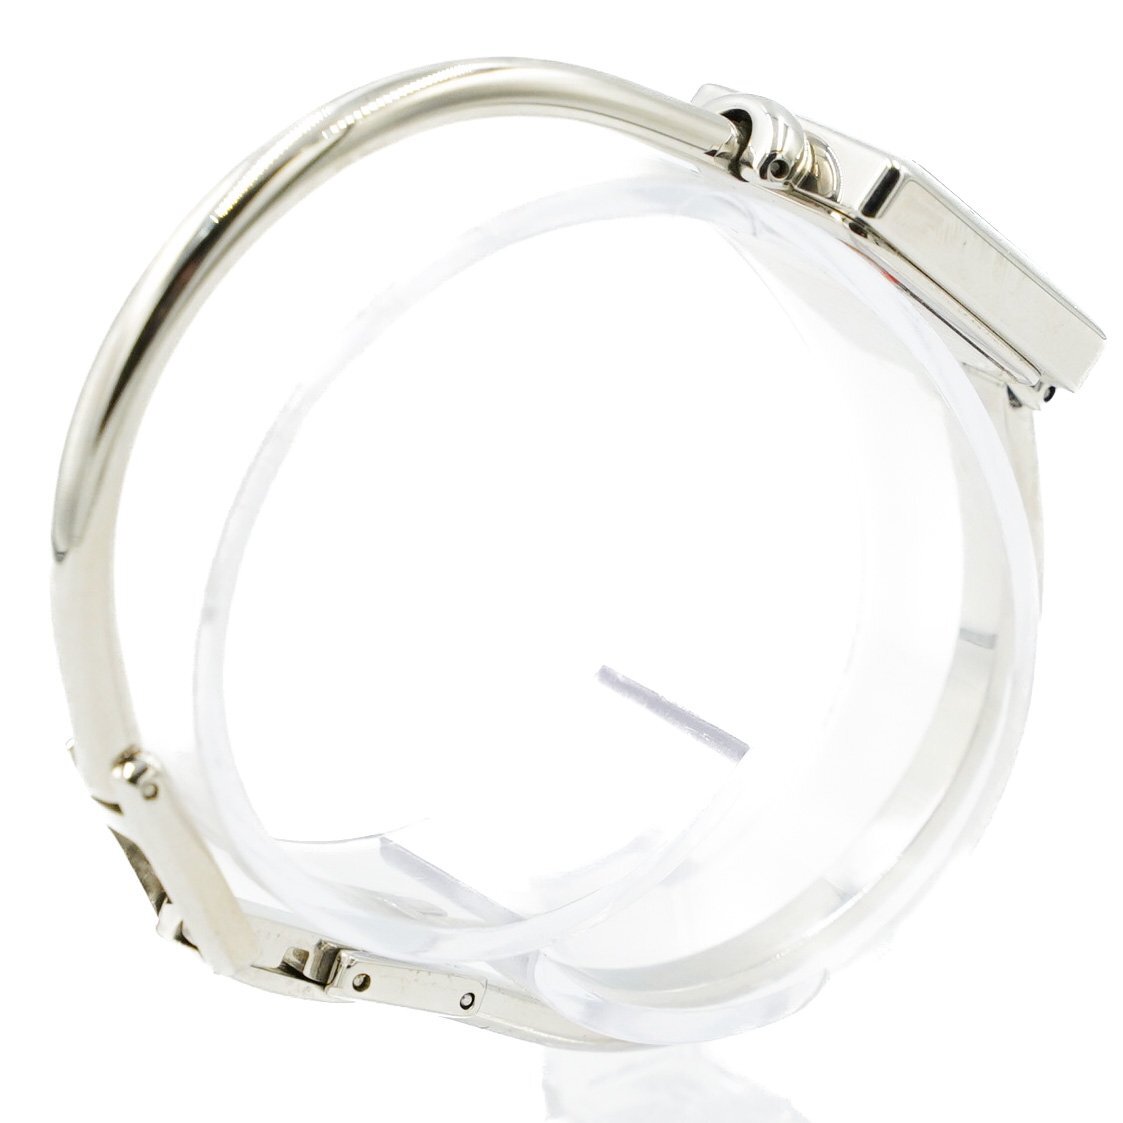 1 иен коробка / с гарантией GUCCI Gucci 1900L браслет часы QZ кварц серебряный серебряный циферблат SS женские наручные часы квадратное 335420240507